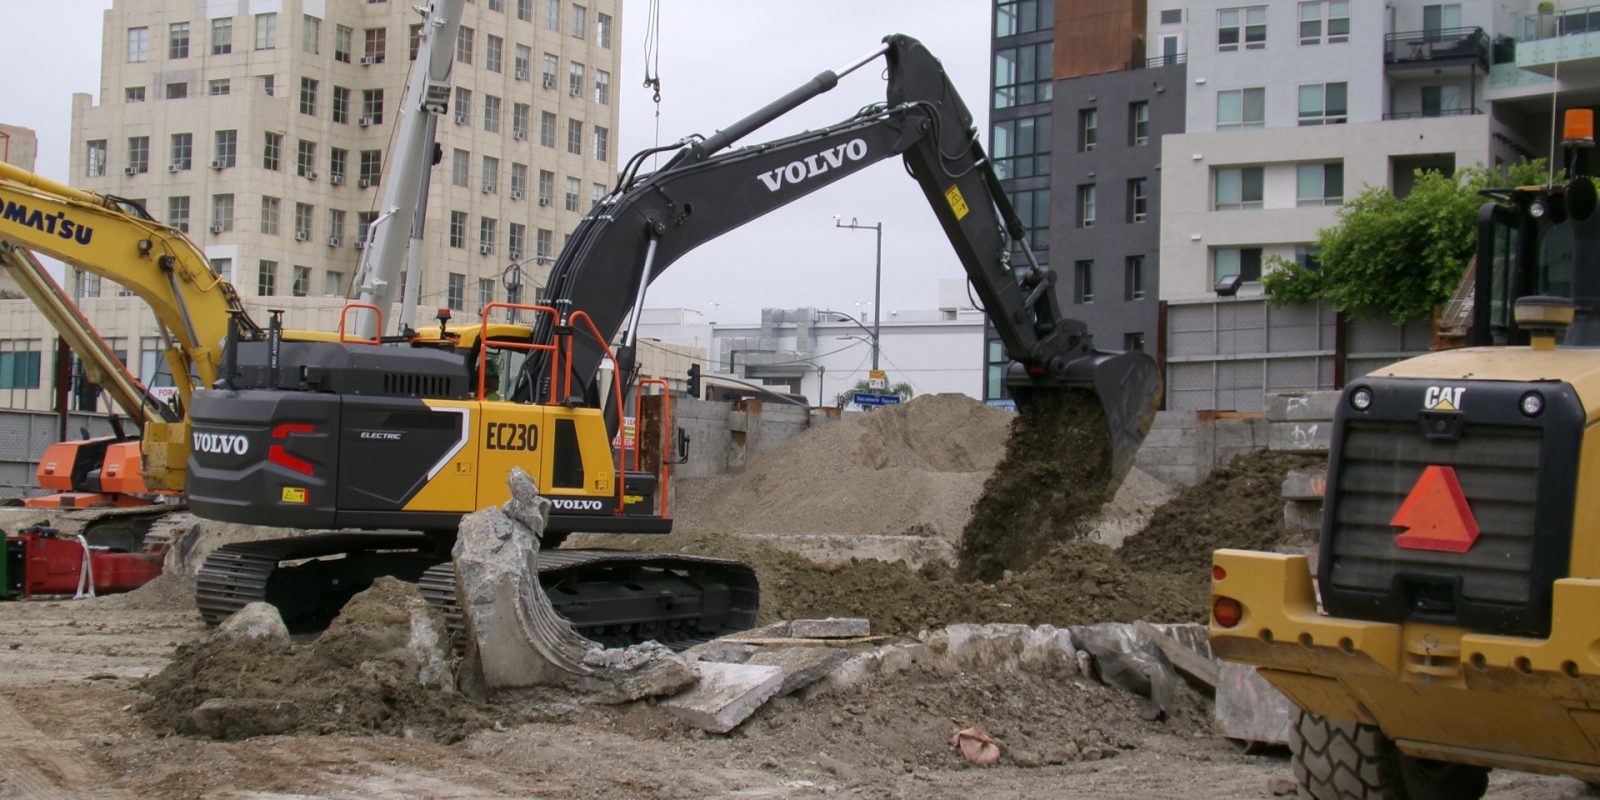 Volvo electric excavator